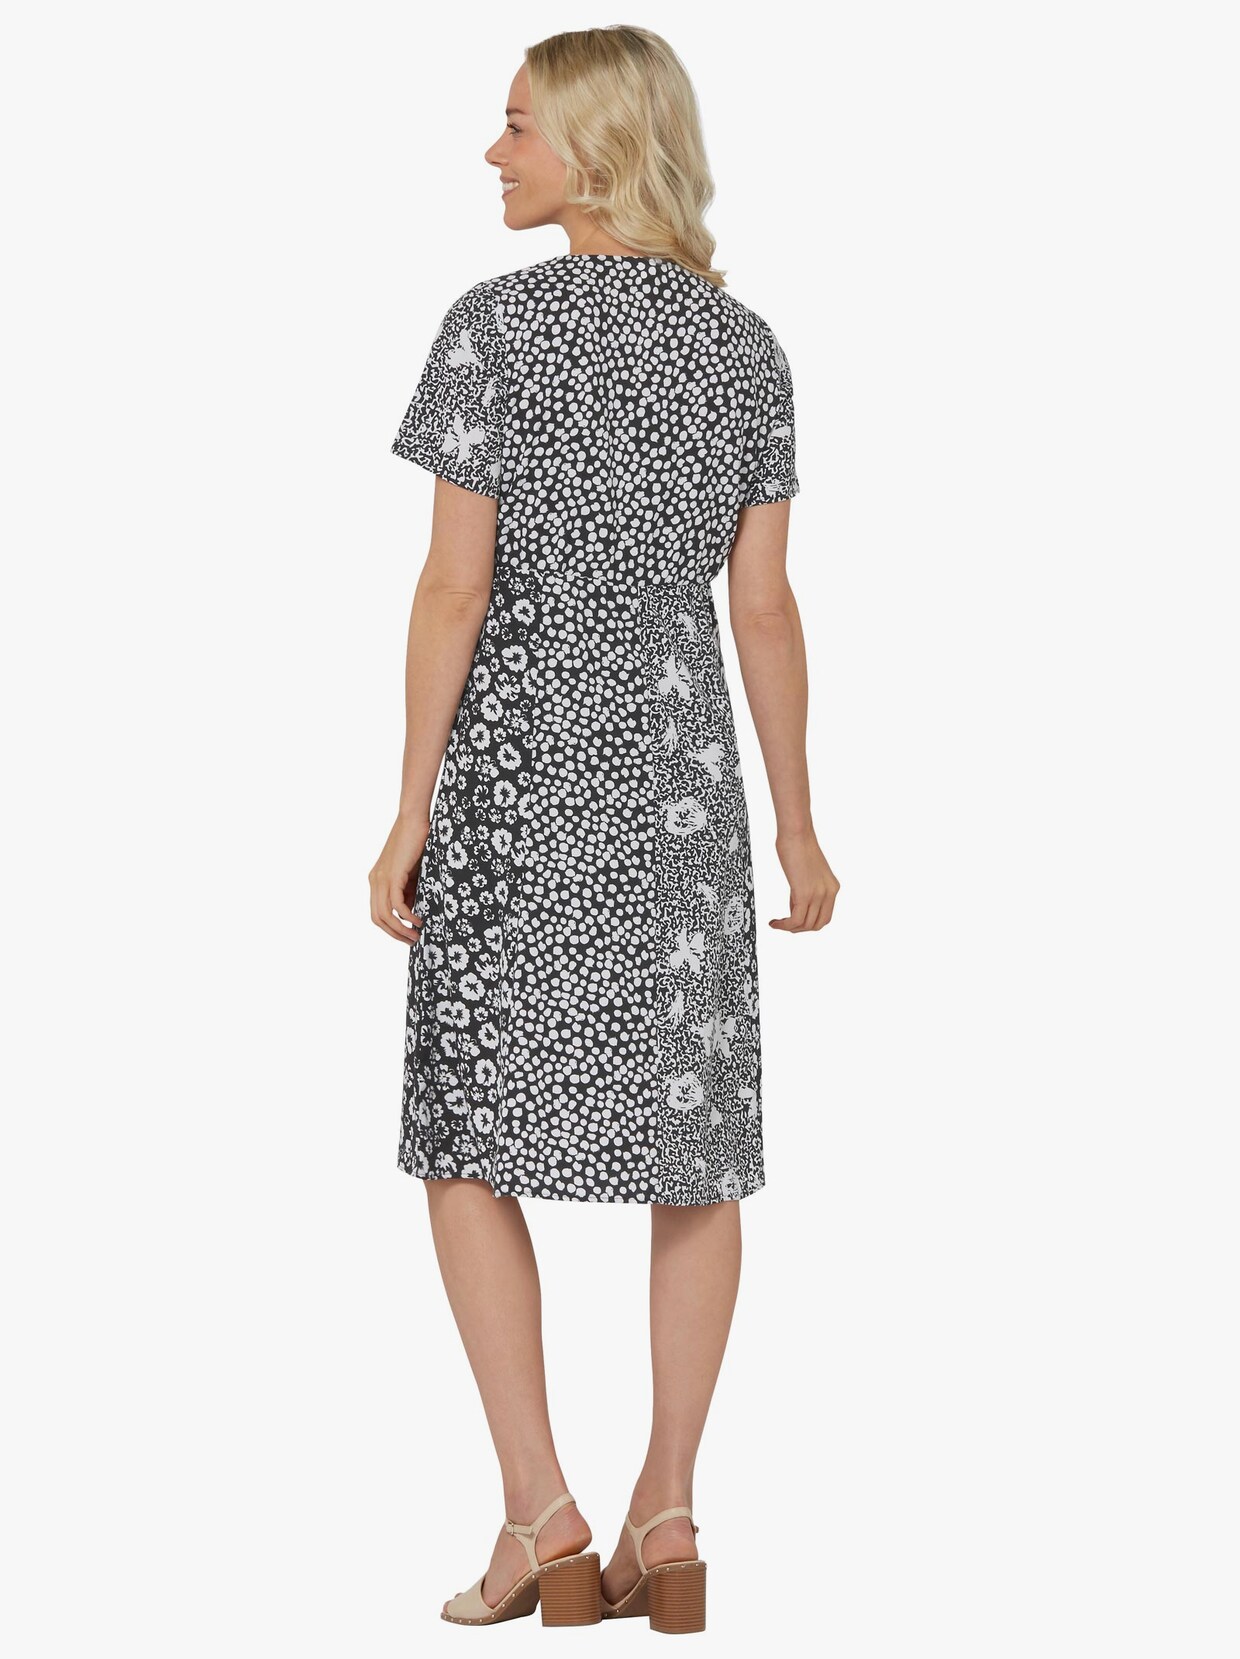 Klänning med tryck - svart-vit, mönstrad